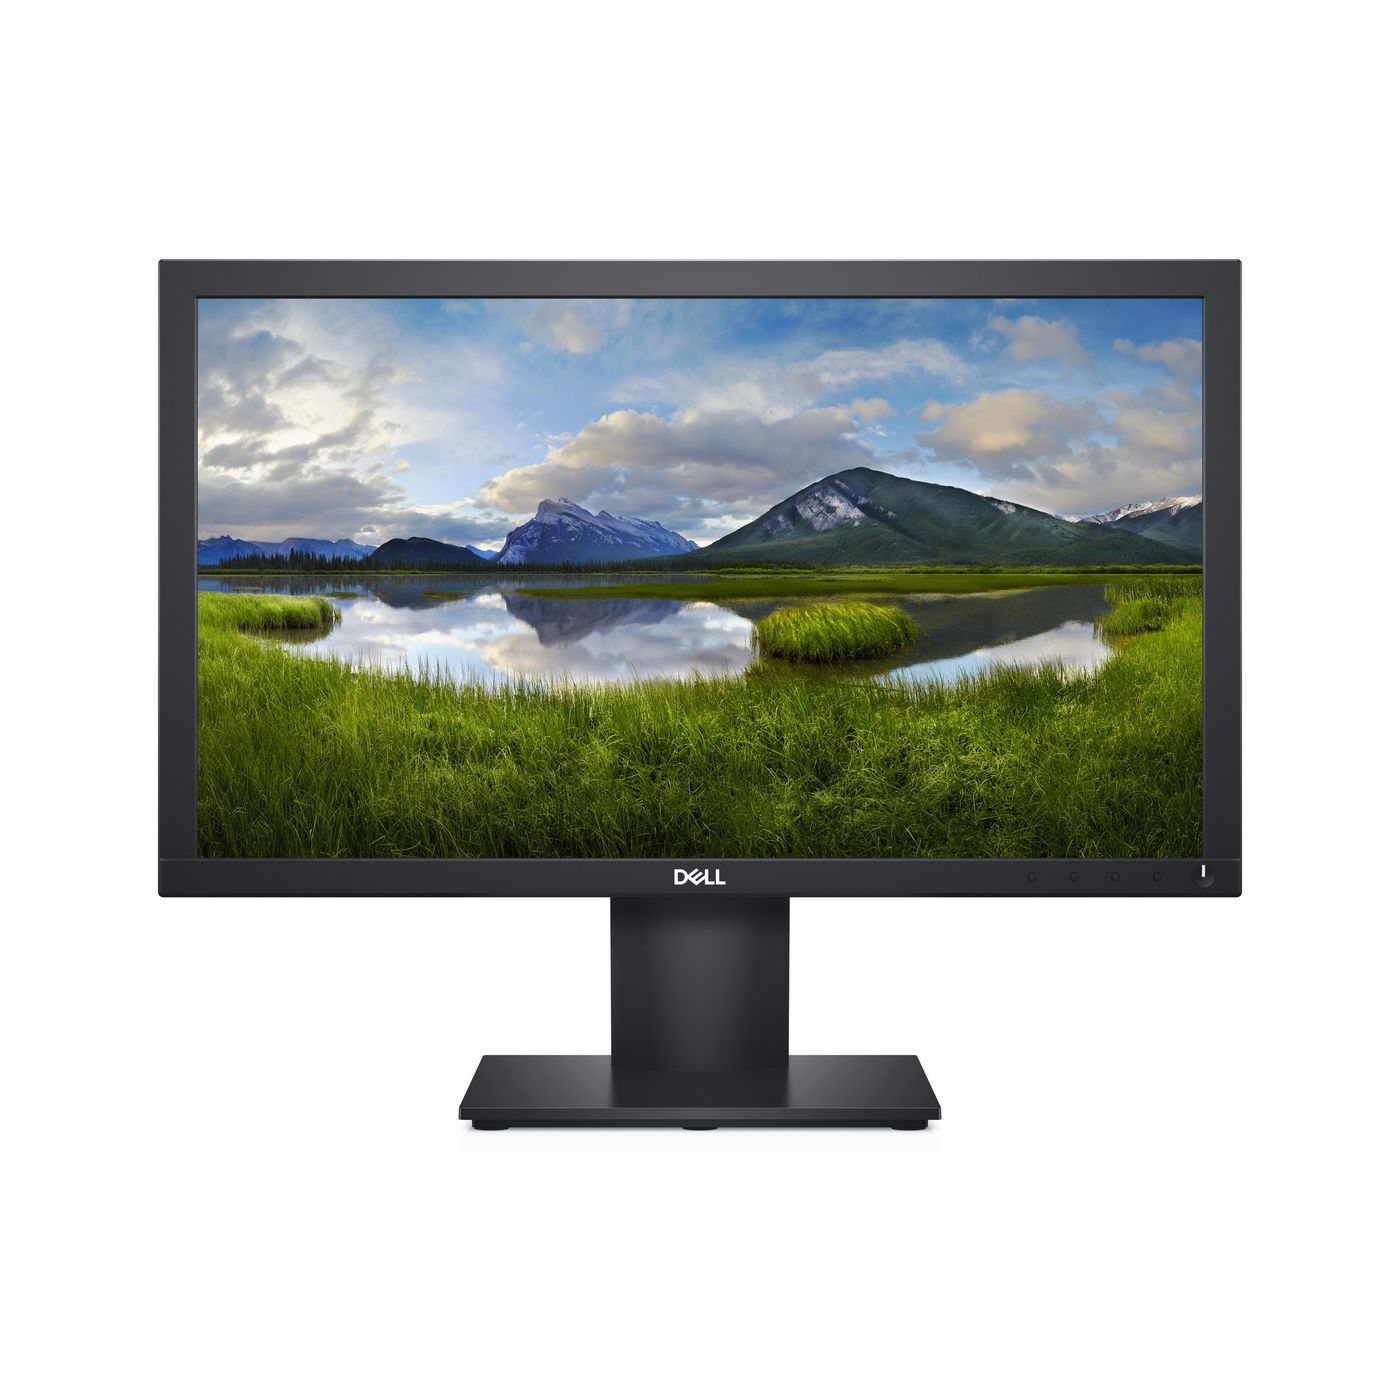 Dell DELL-E2020H Monitor E2020H - 19.5 Black 